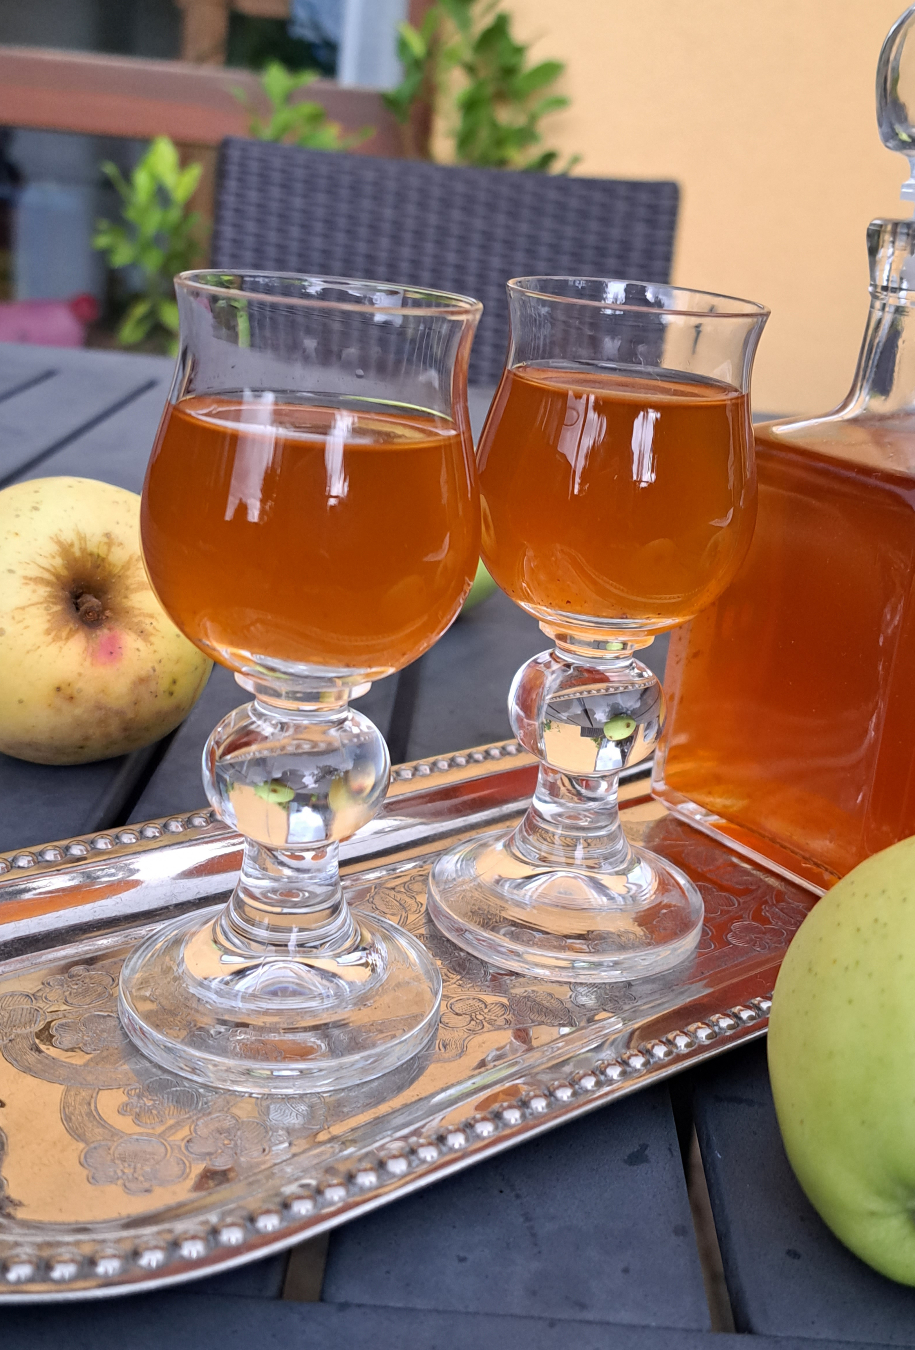 Zwei mit Liebe zubereitete Gläser, gefüllt mit unserem hausgemachten Apfellikör aus frischen Apfelschalen. Ein verlockendes Getränk, das den Geschmack von frischen Äpfeln und wärmendem Zimt perfekt vereint.